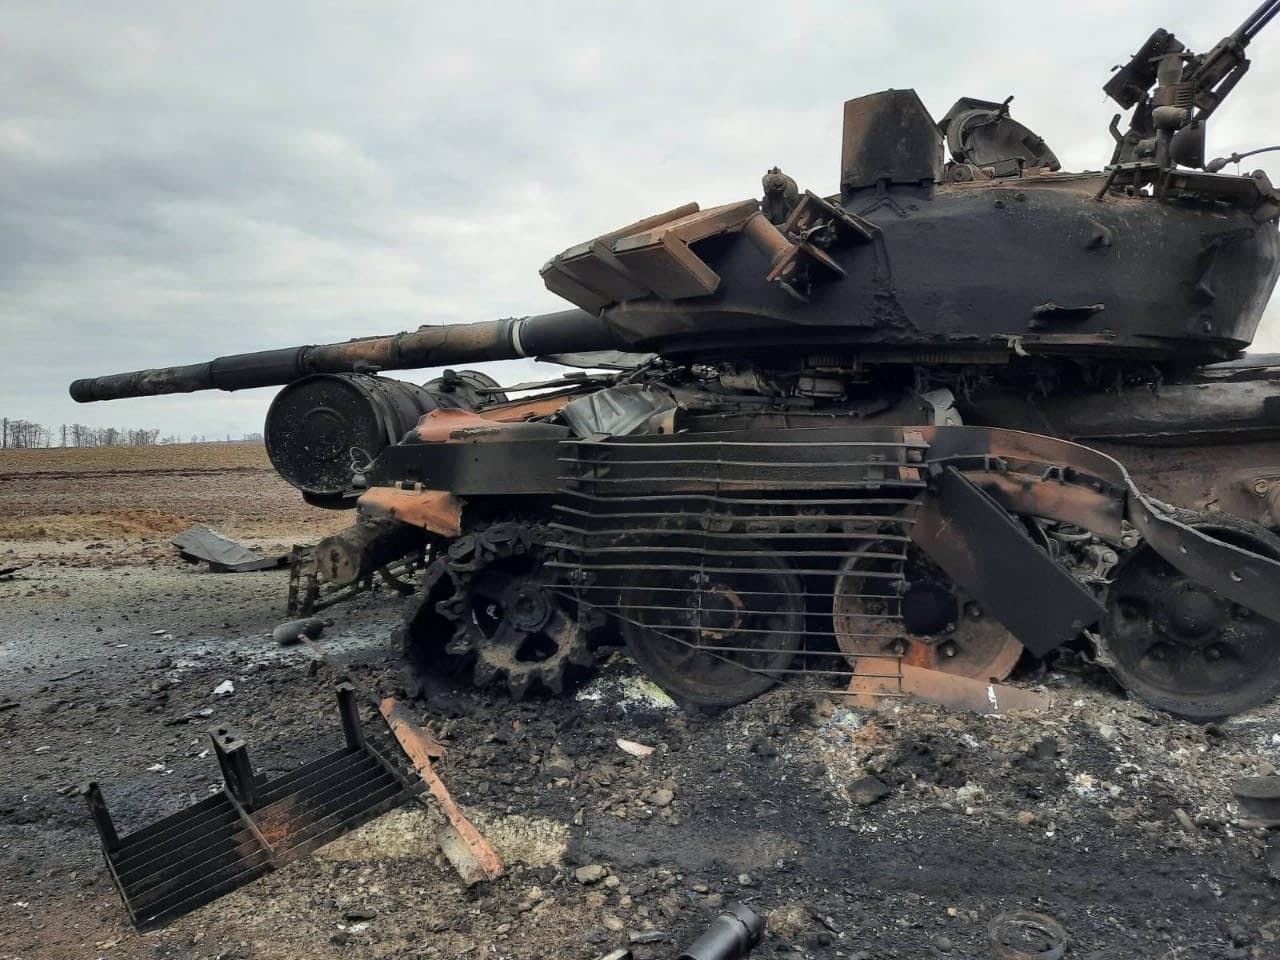 Потери российской стороны: 4300 военнослужащих, 146 танков, 46 самолетов, 4 града (видео)